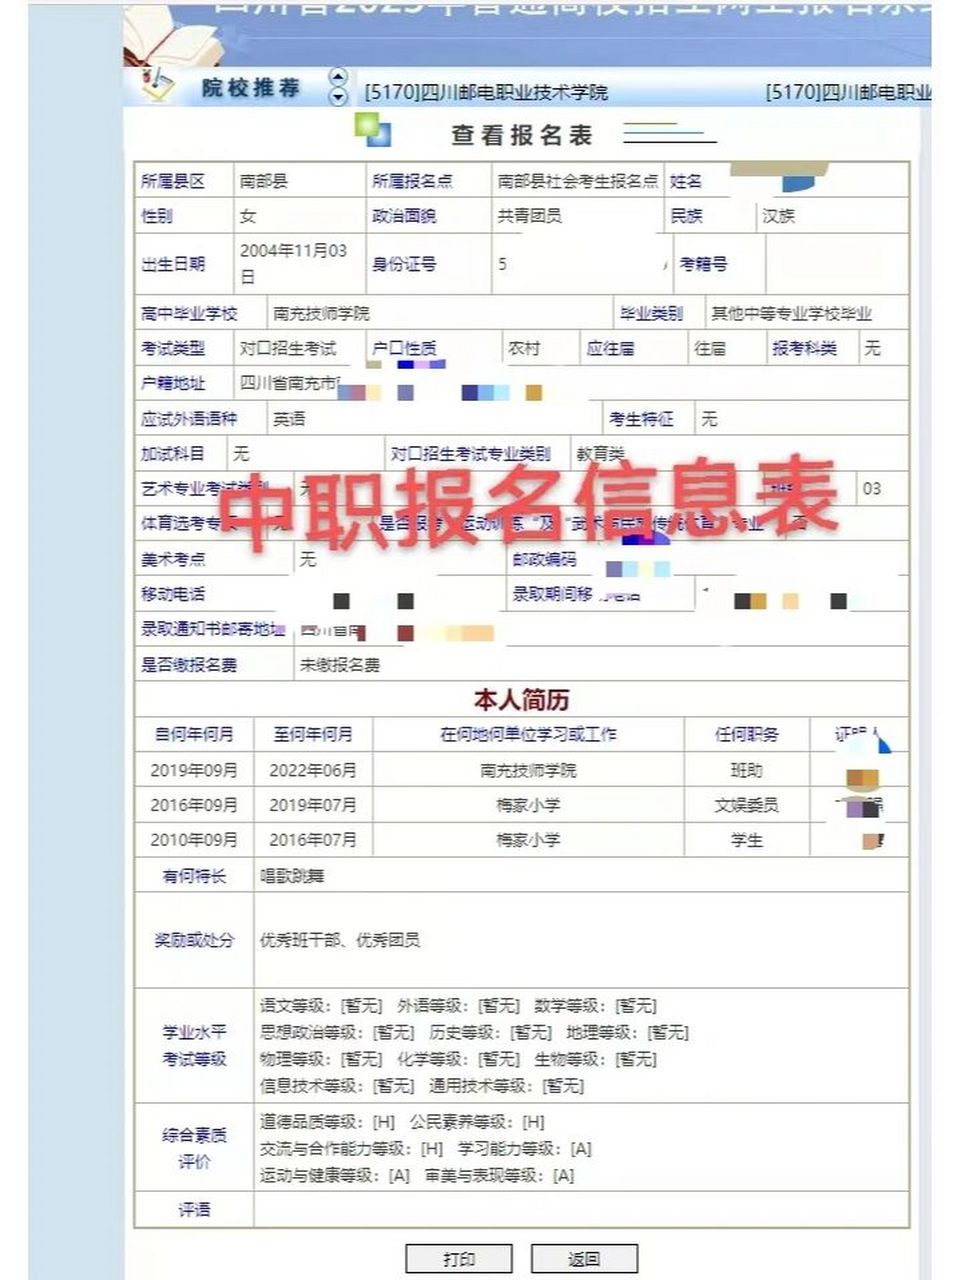 四川高考报名表格下载电子版(四川高考报名表格下载电子版图片)